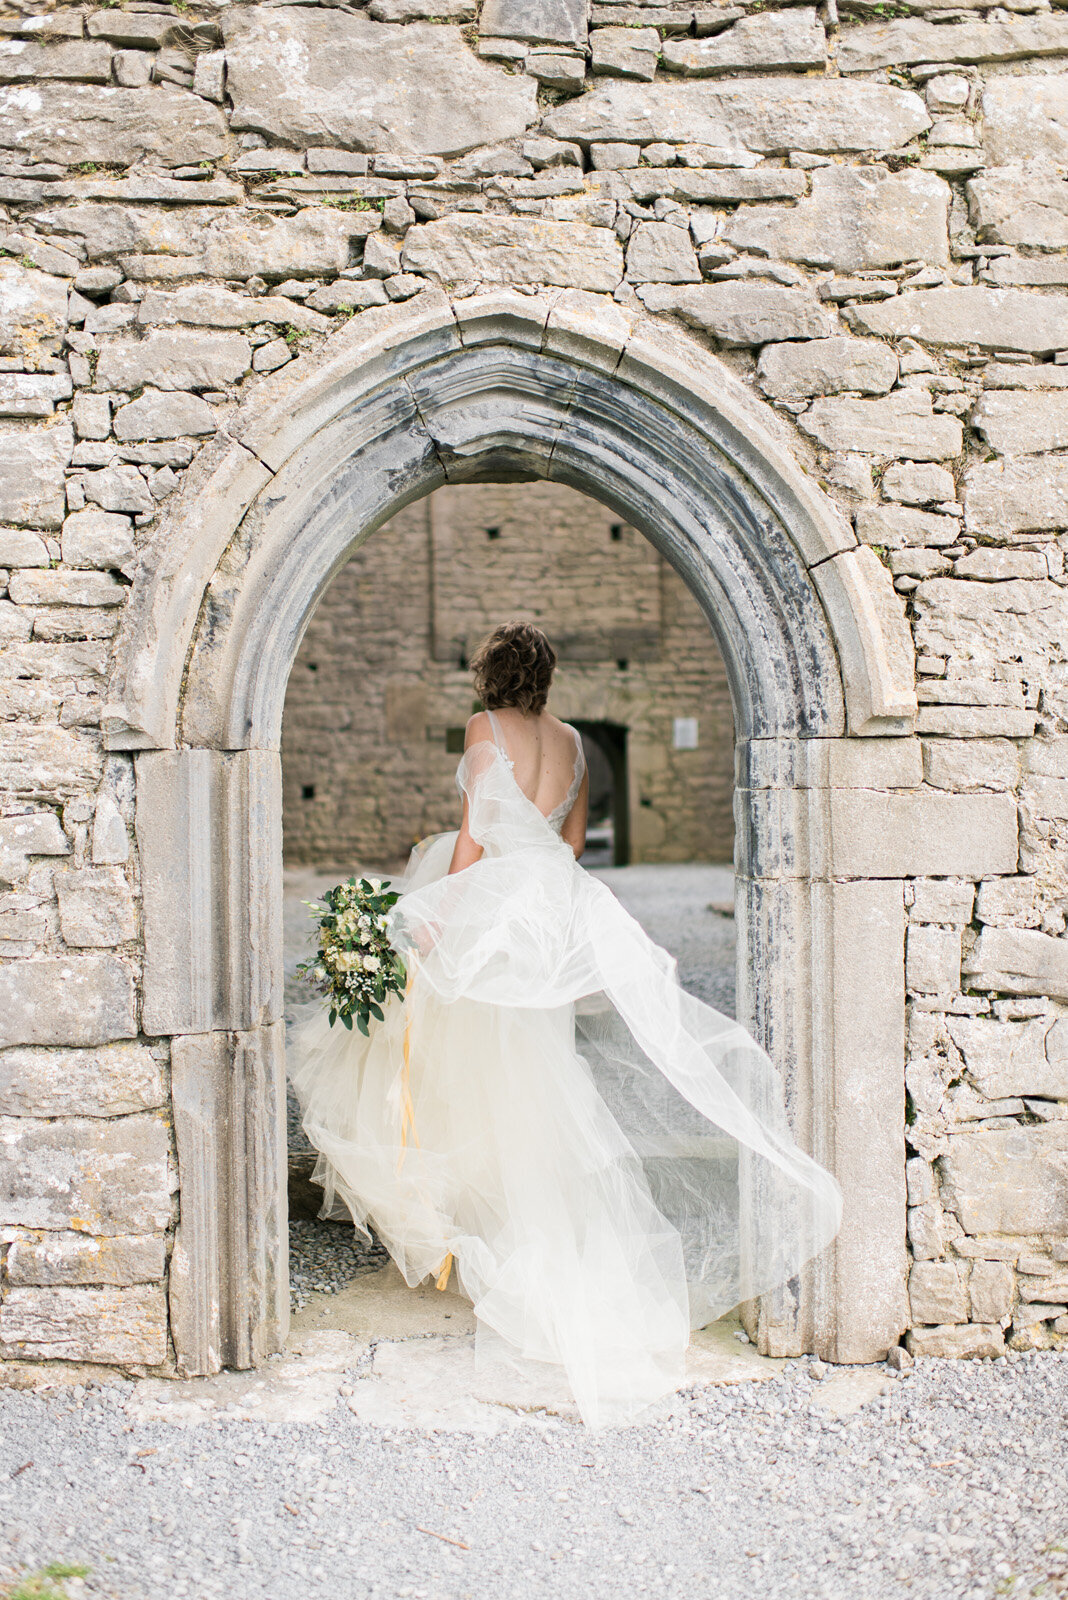 Kate-Murtaugh-Events-Ireland-international-destination-wedding-planner-Irish-bride-stonework